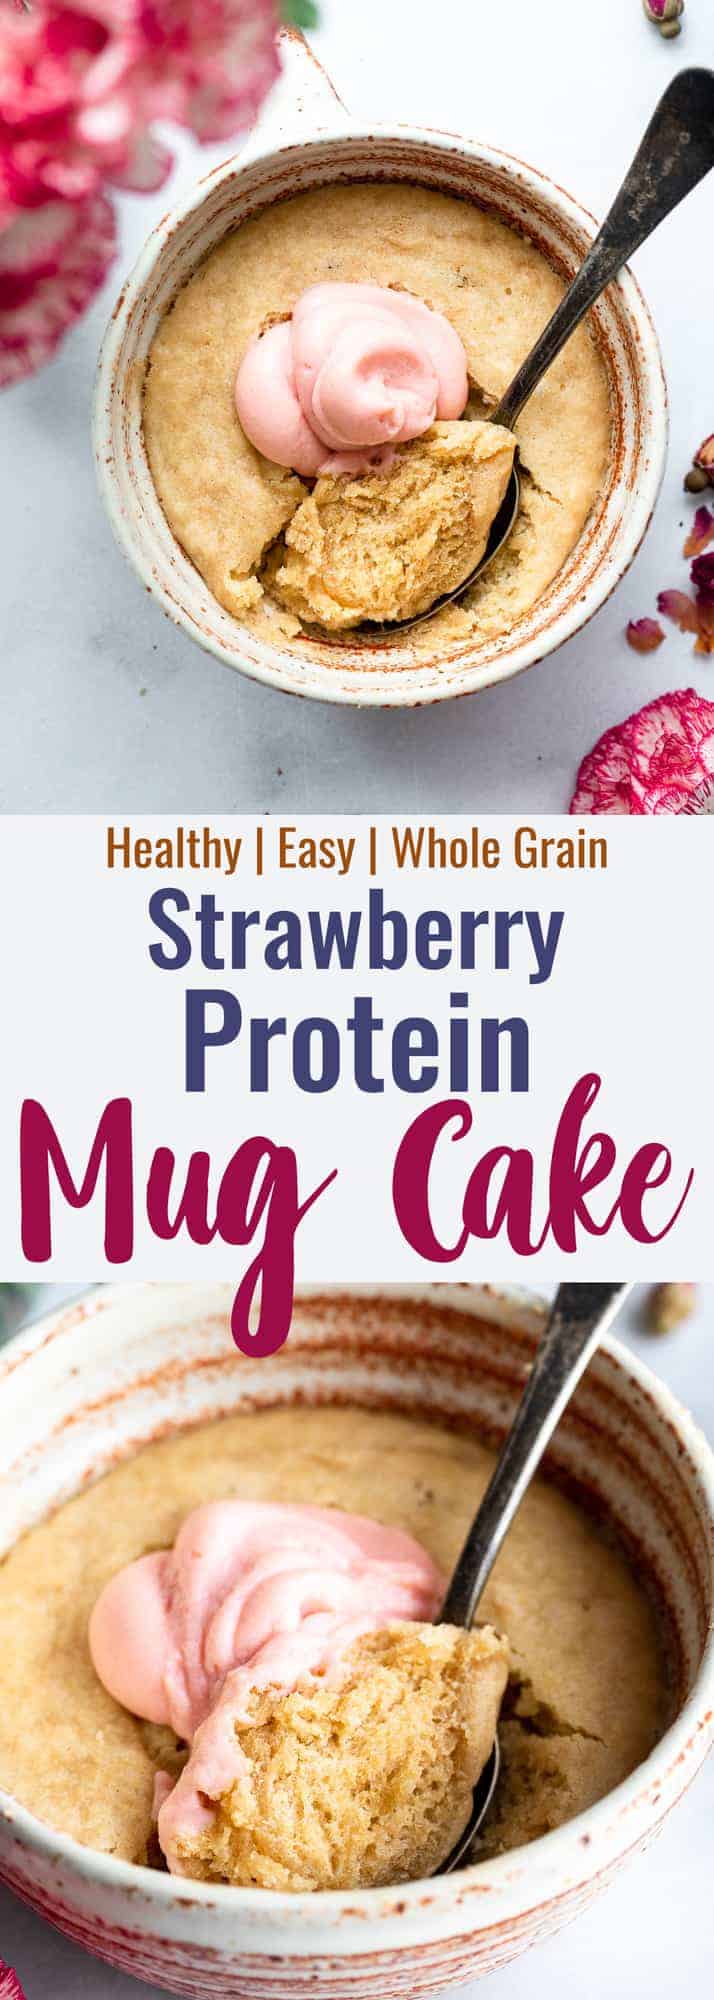 protein powder mug cake